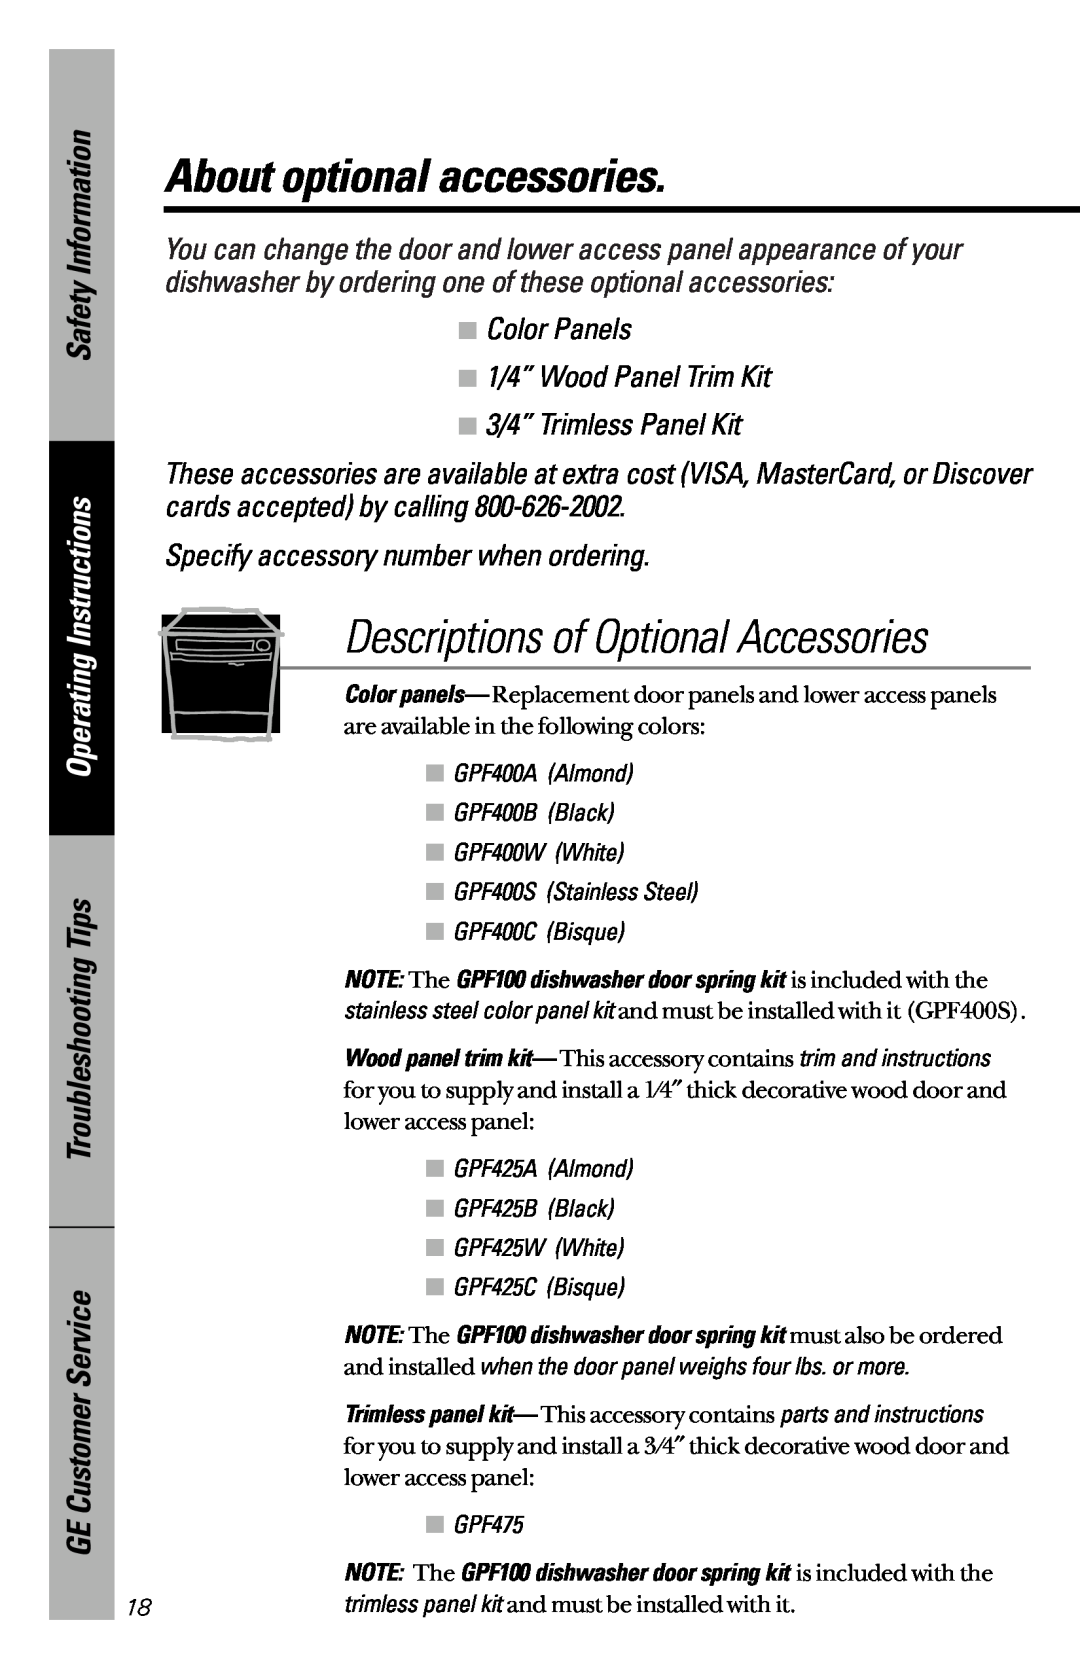 GE EDW2020 About optional accessories, Descriptions of Optional Accessories, Troubleshooting Tips GE Customer Service 